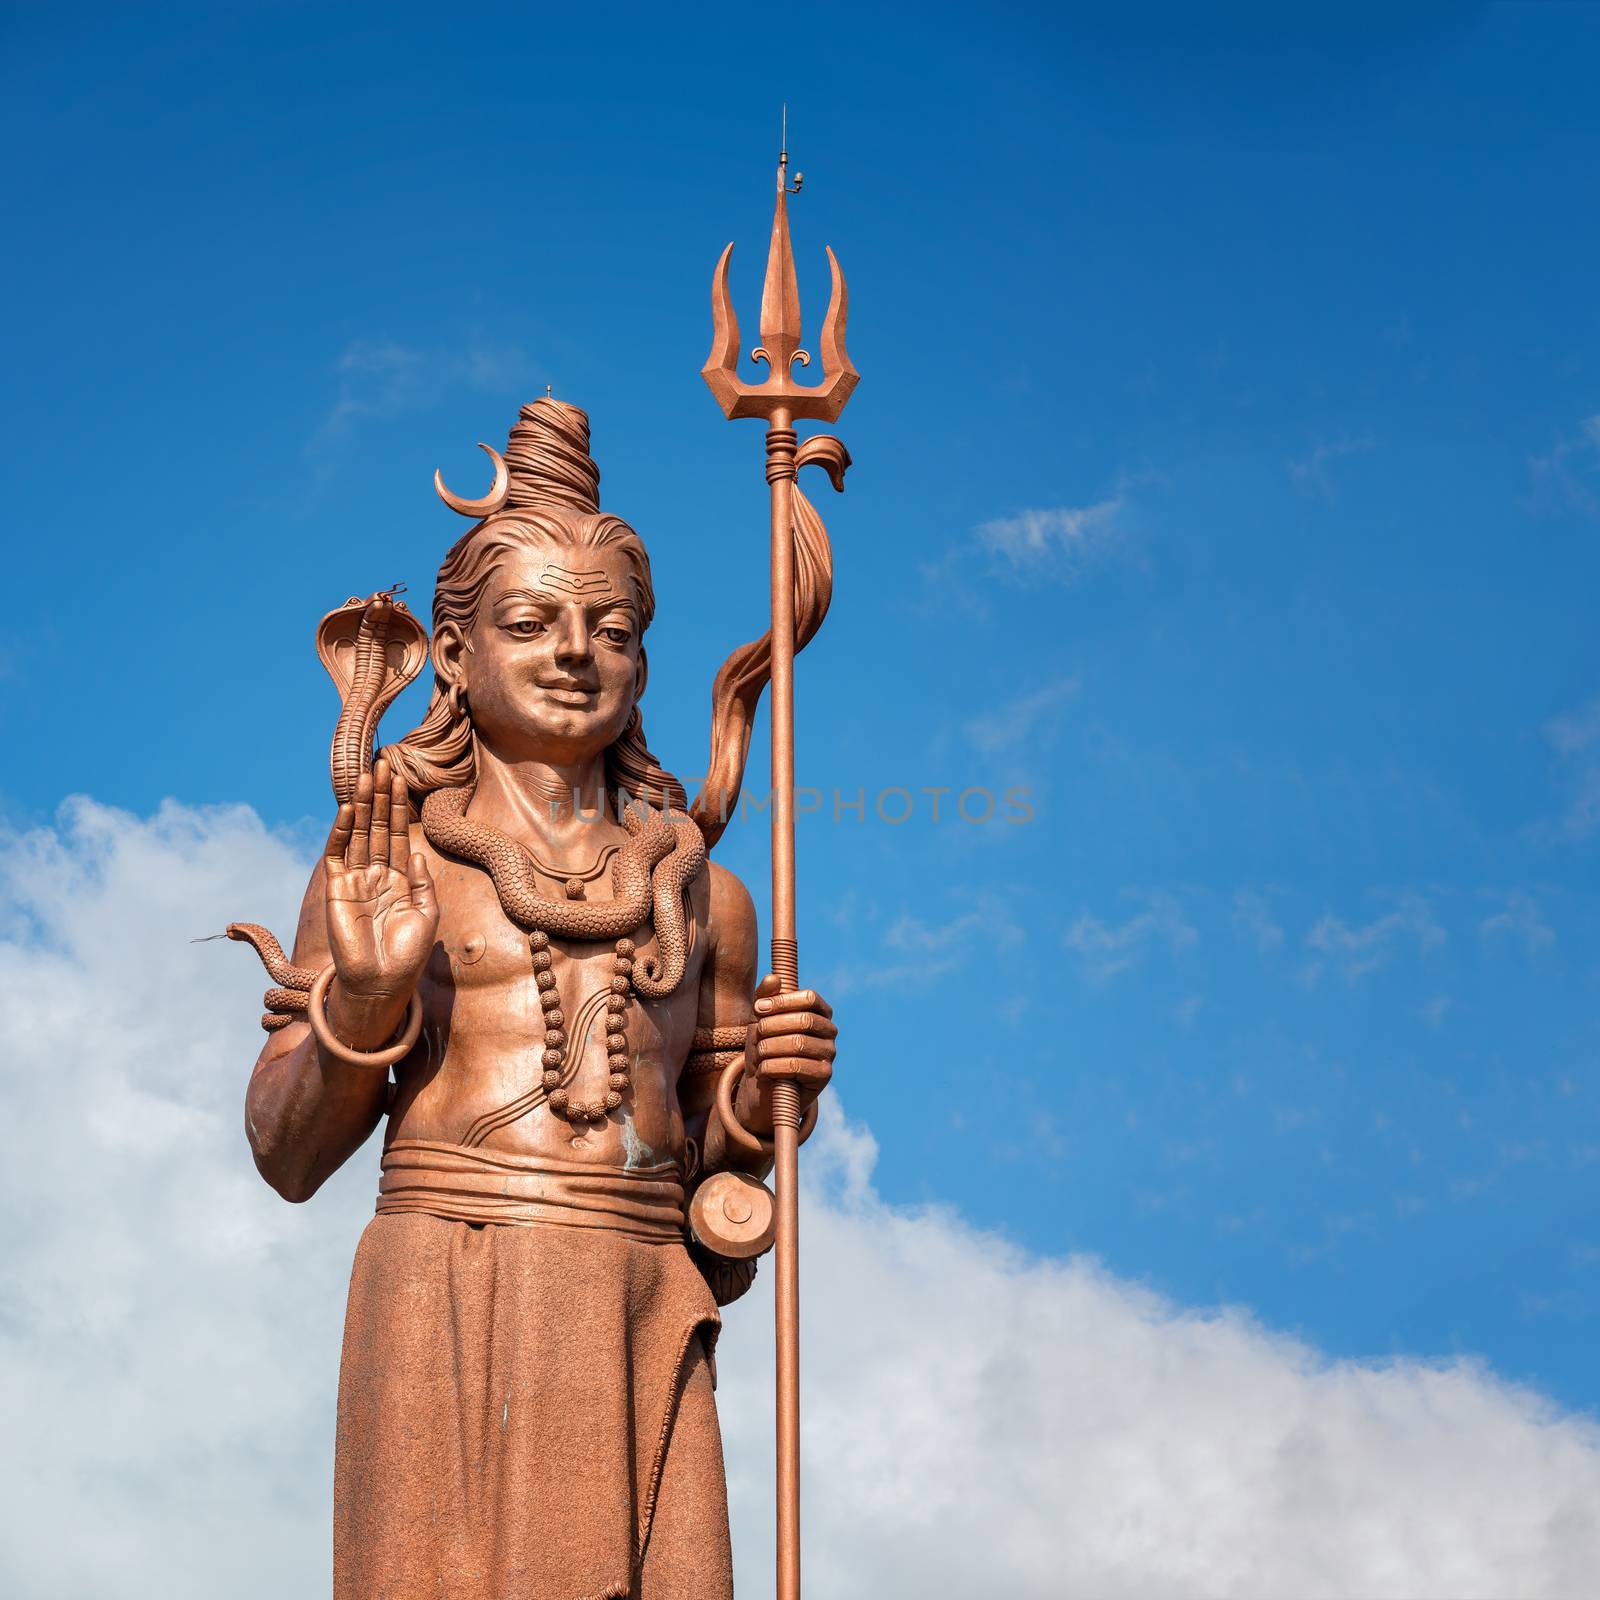 Awesome shiva statue mauritius by Robertobinetti70